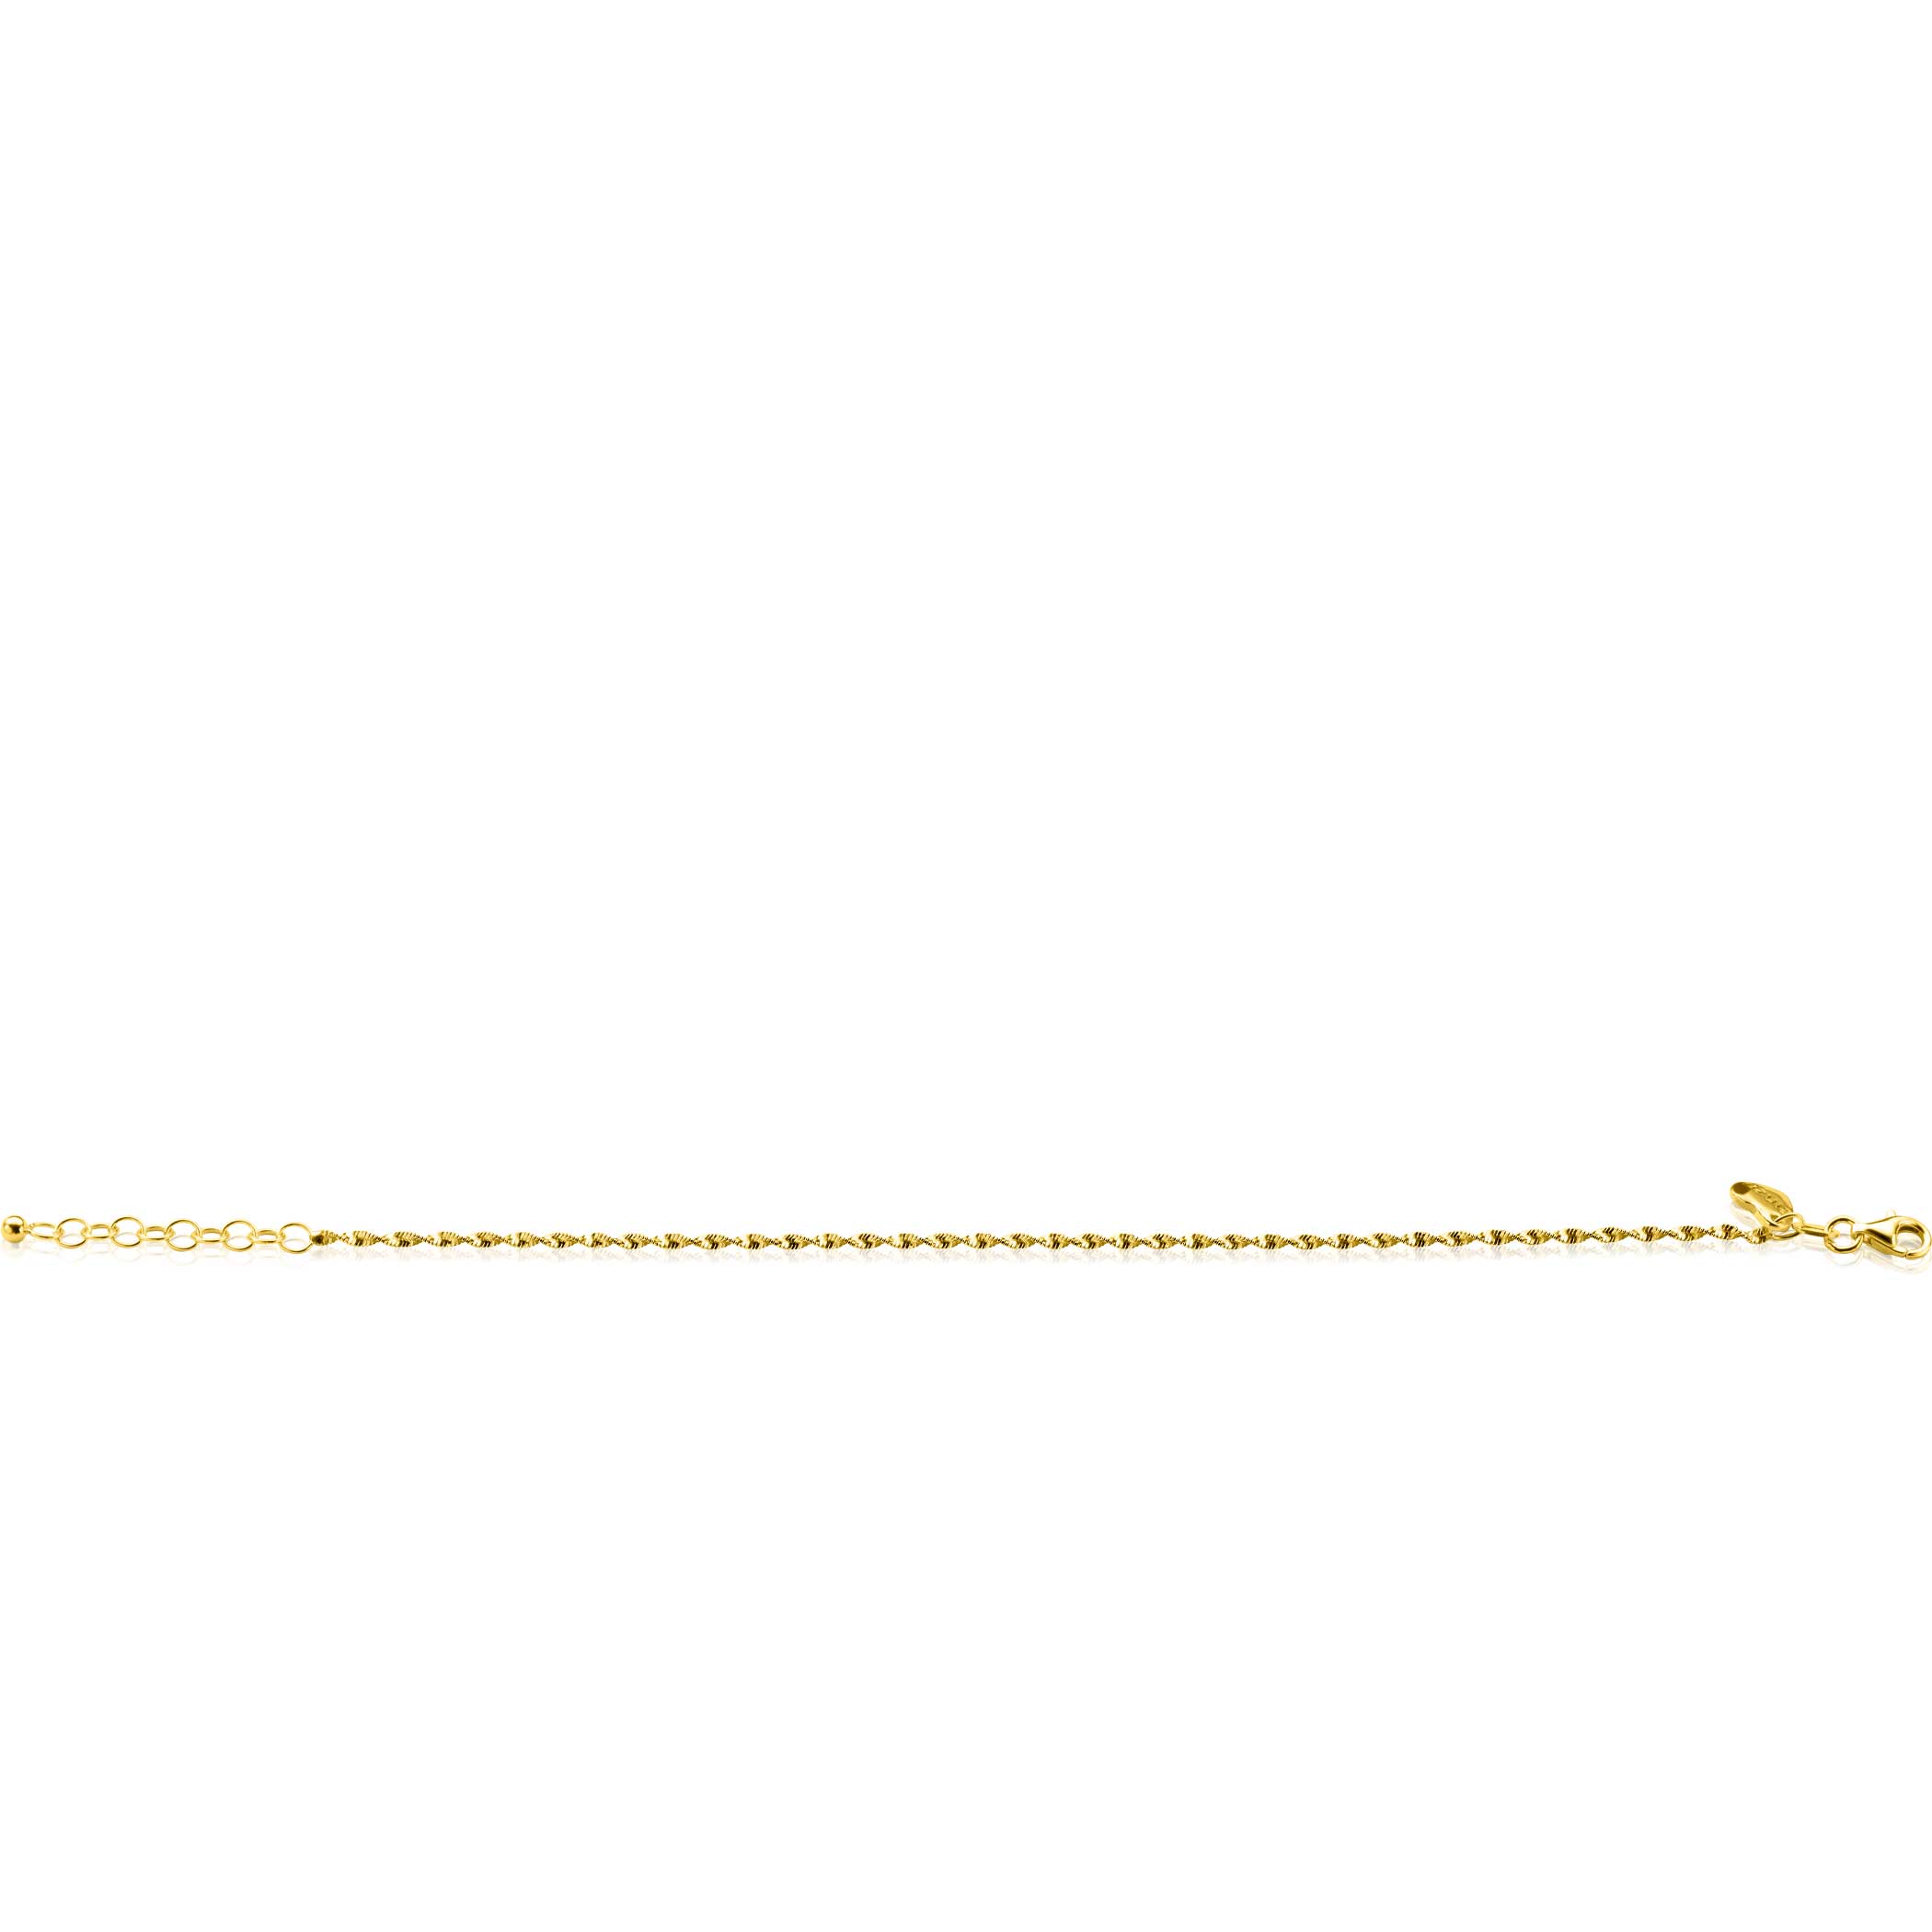 ZINZI gold plated zilveren singapore armband met glinsterende gedraaide schakels 1,9mm breed 17-20cm ZIA2585G
